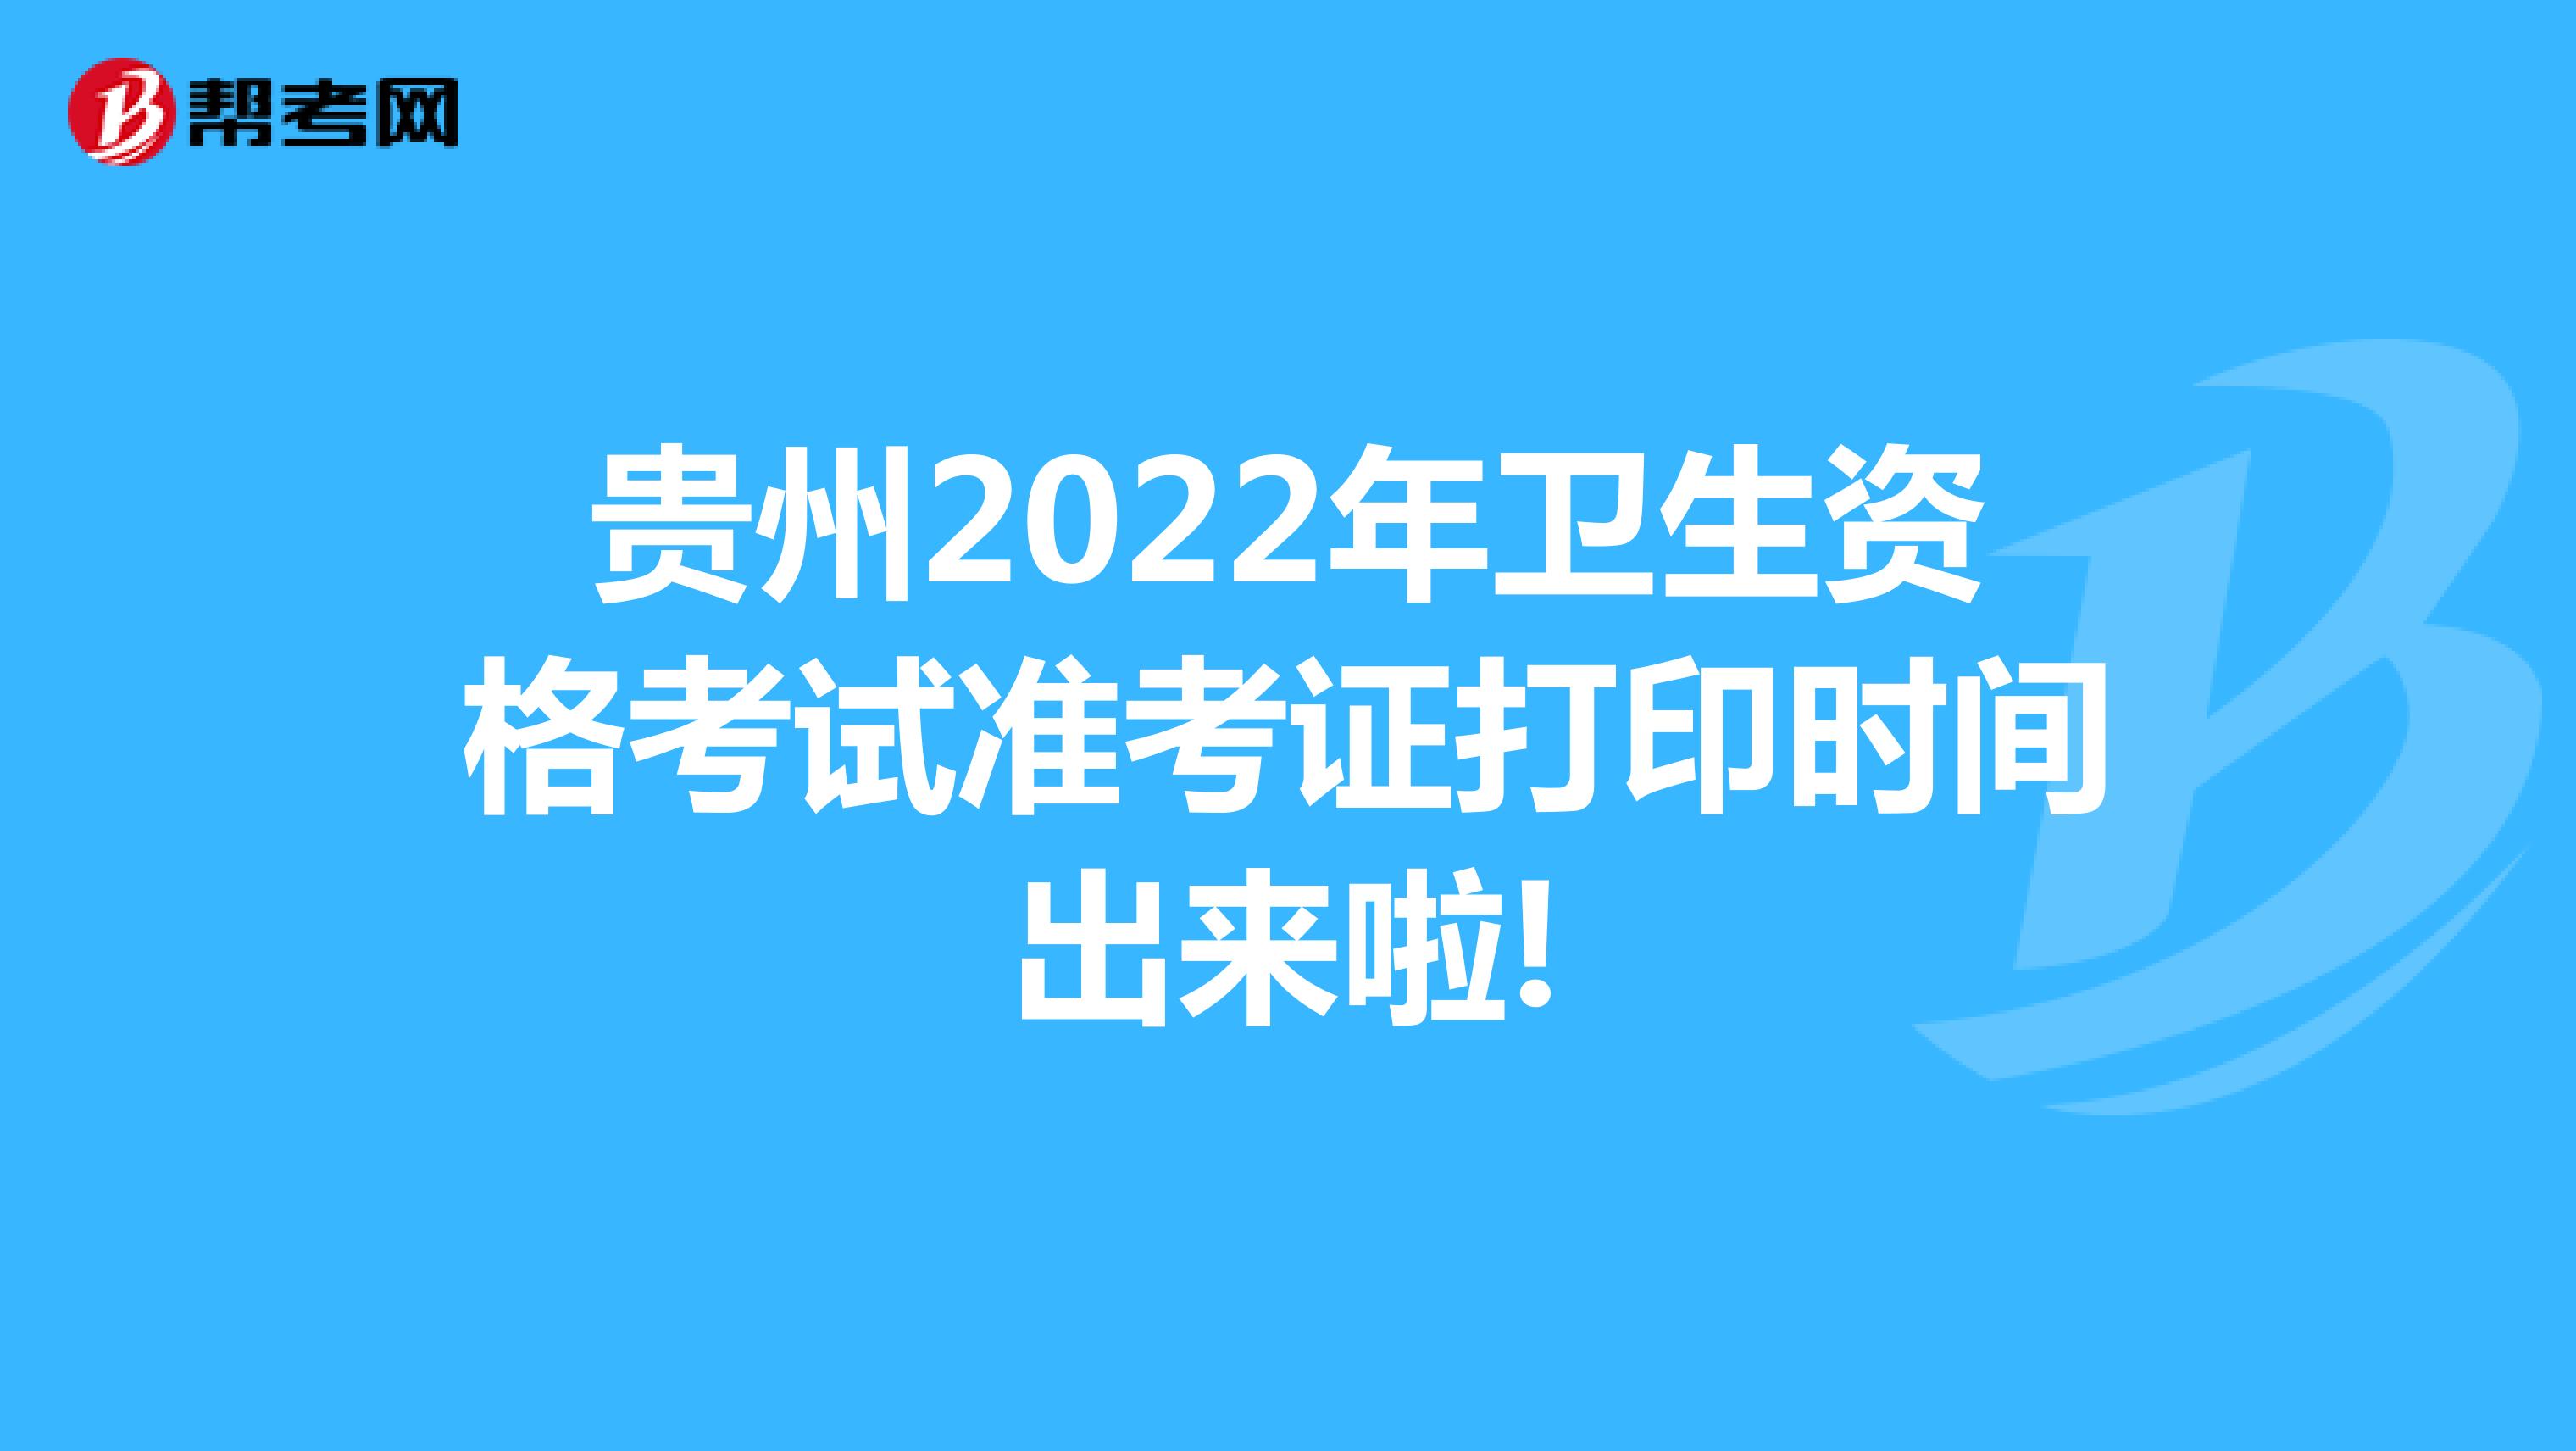 贵州2022年卫生资格考试准考证打印时间出来啦!